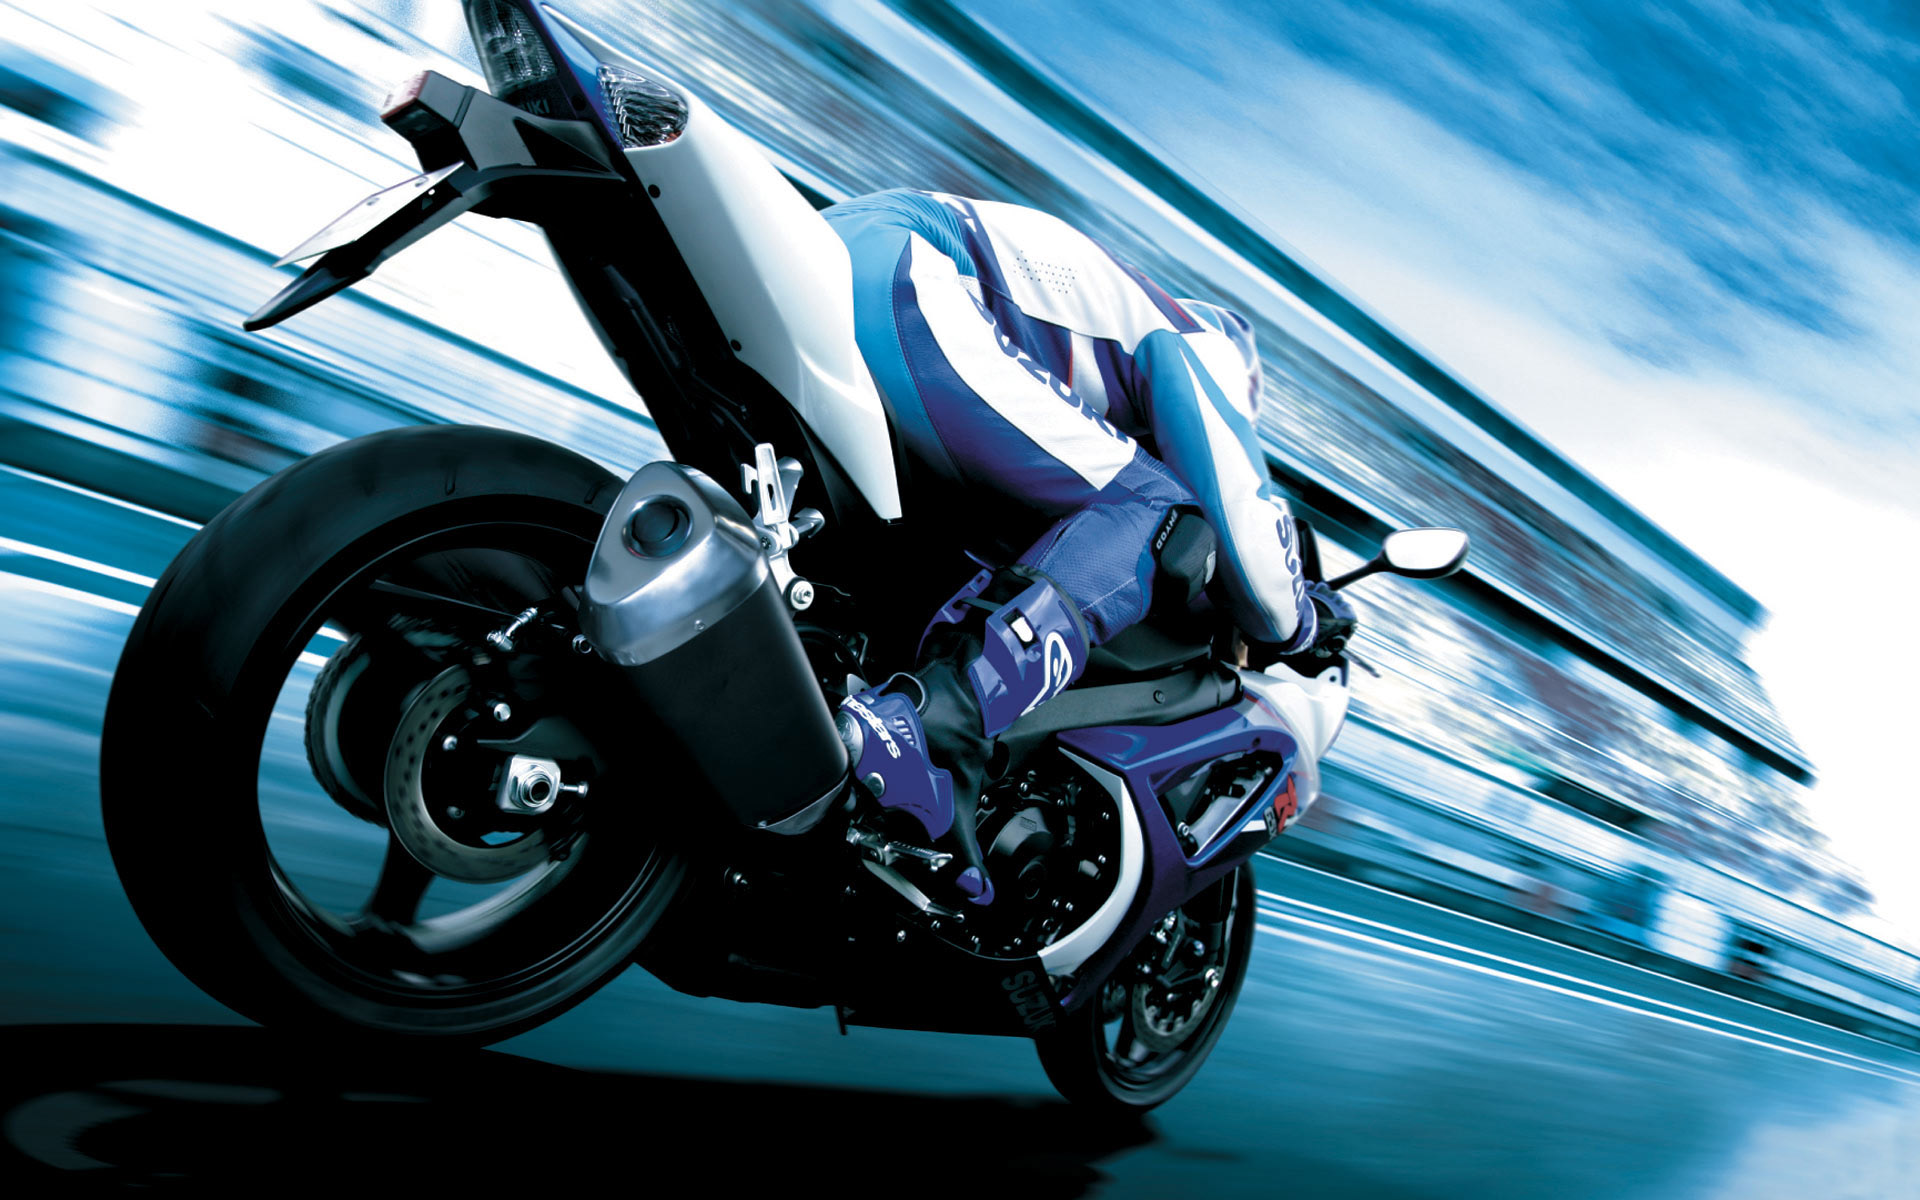 fond d'écran de moto,véhicule,moto,bleu,véhicule à moteur,voiture